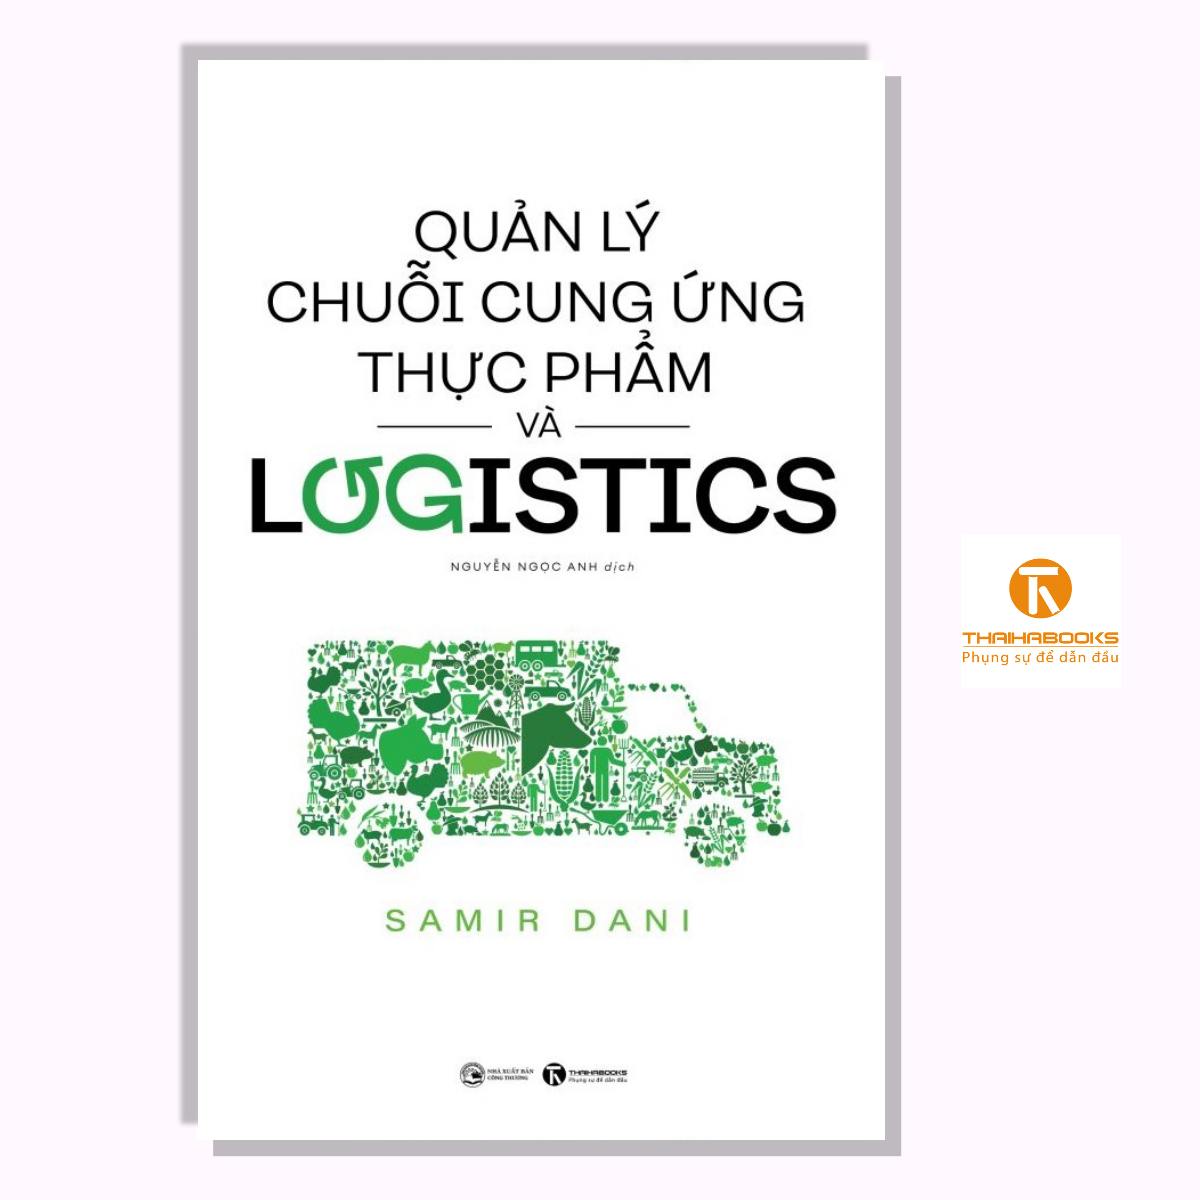 Sách - Quản lý chuỗi cung ứng thực phẩm và logistics - TháI Hà Books